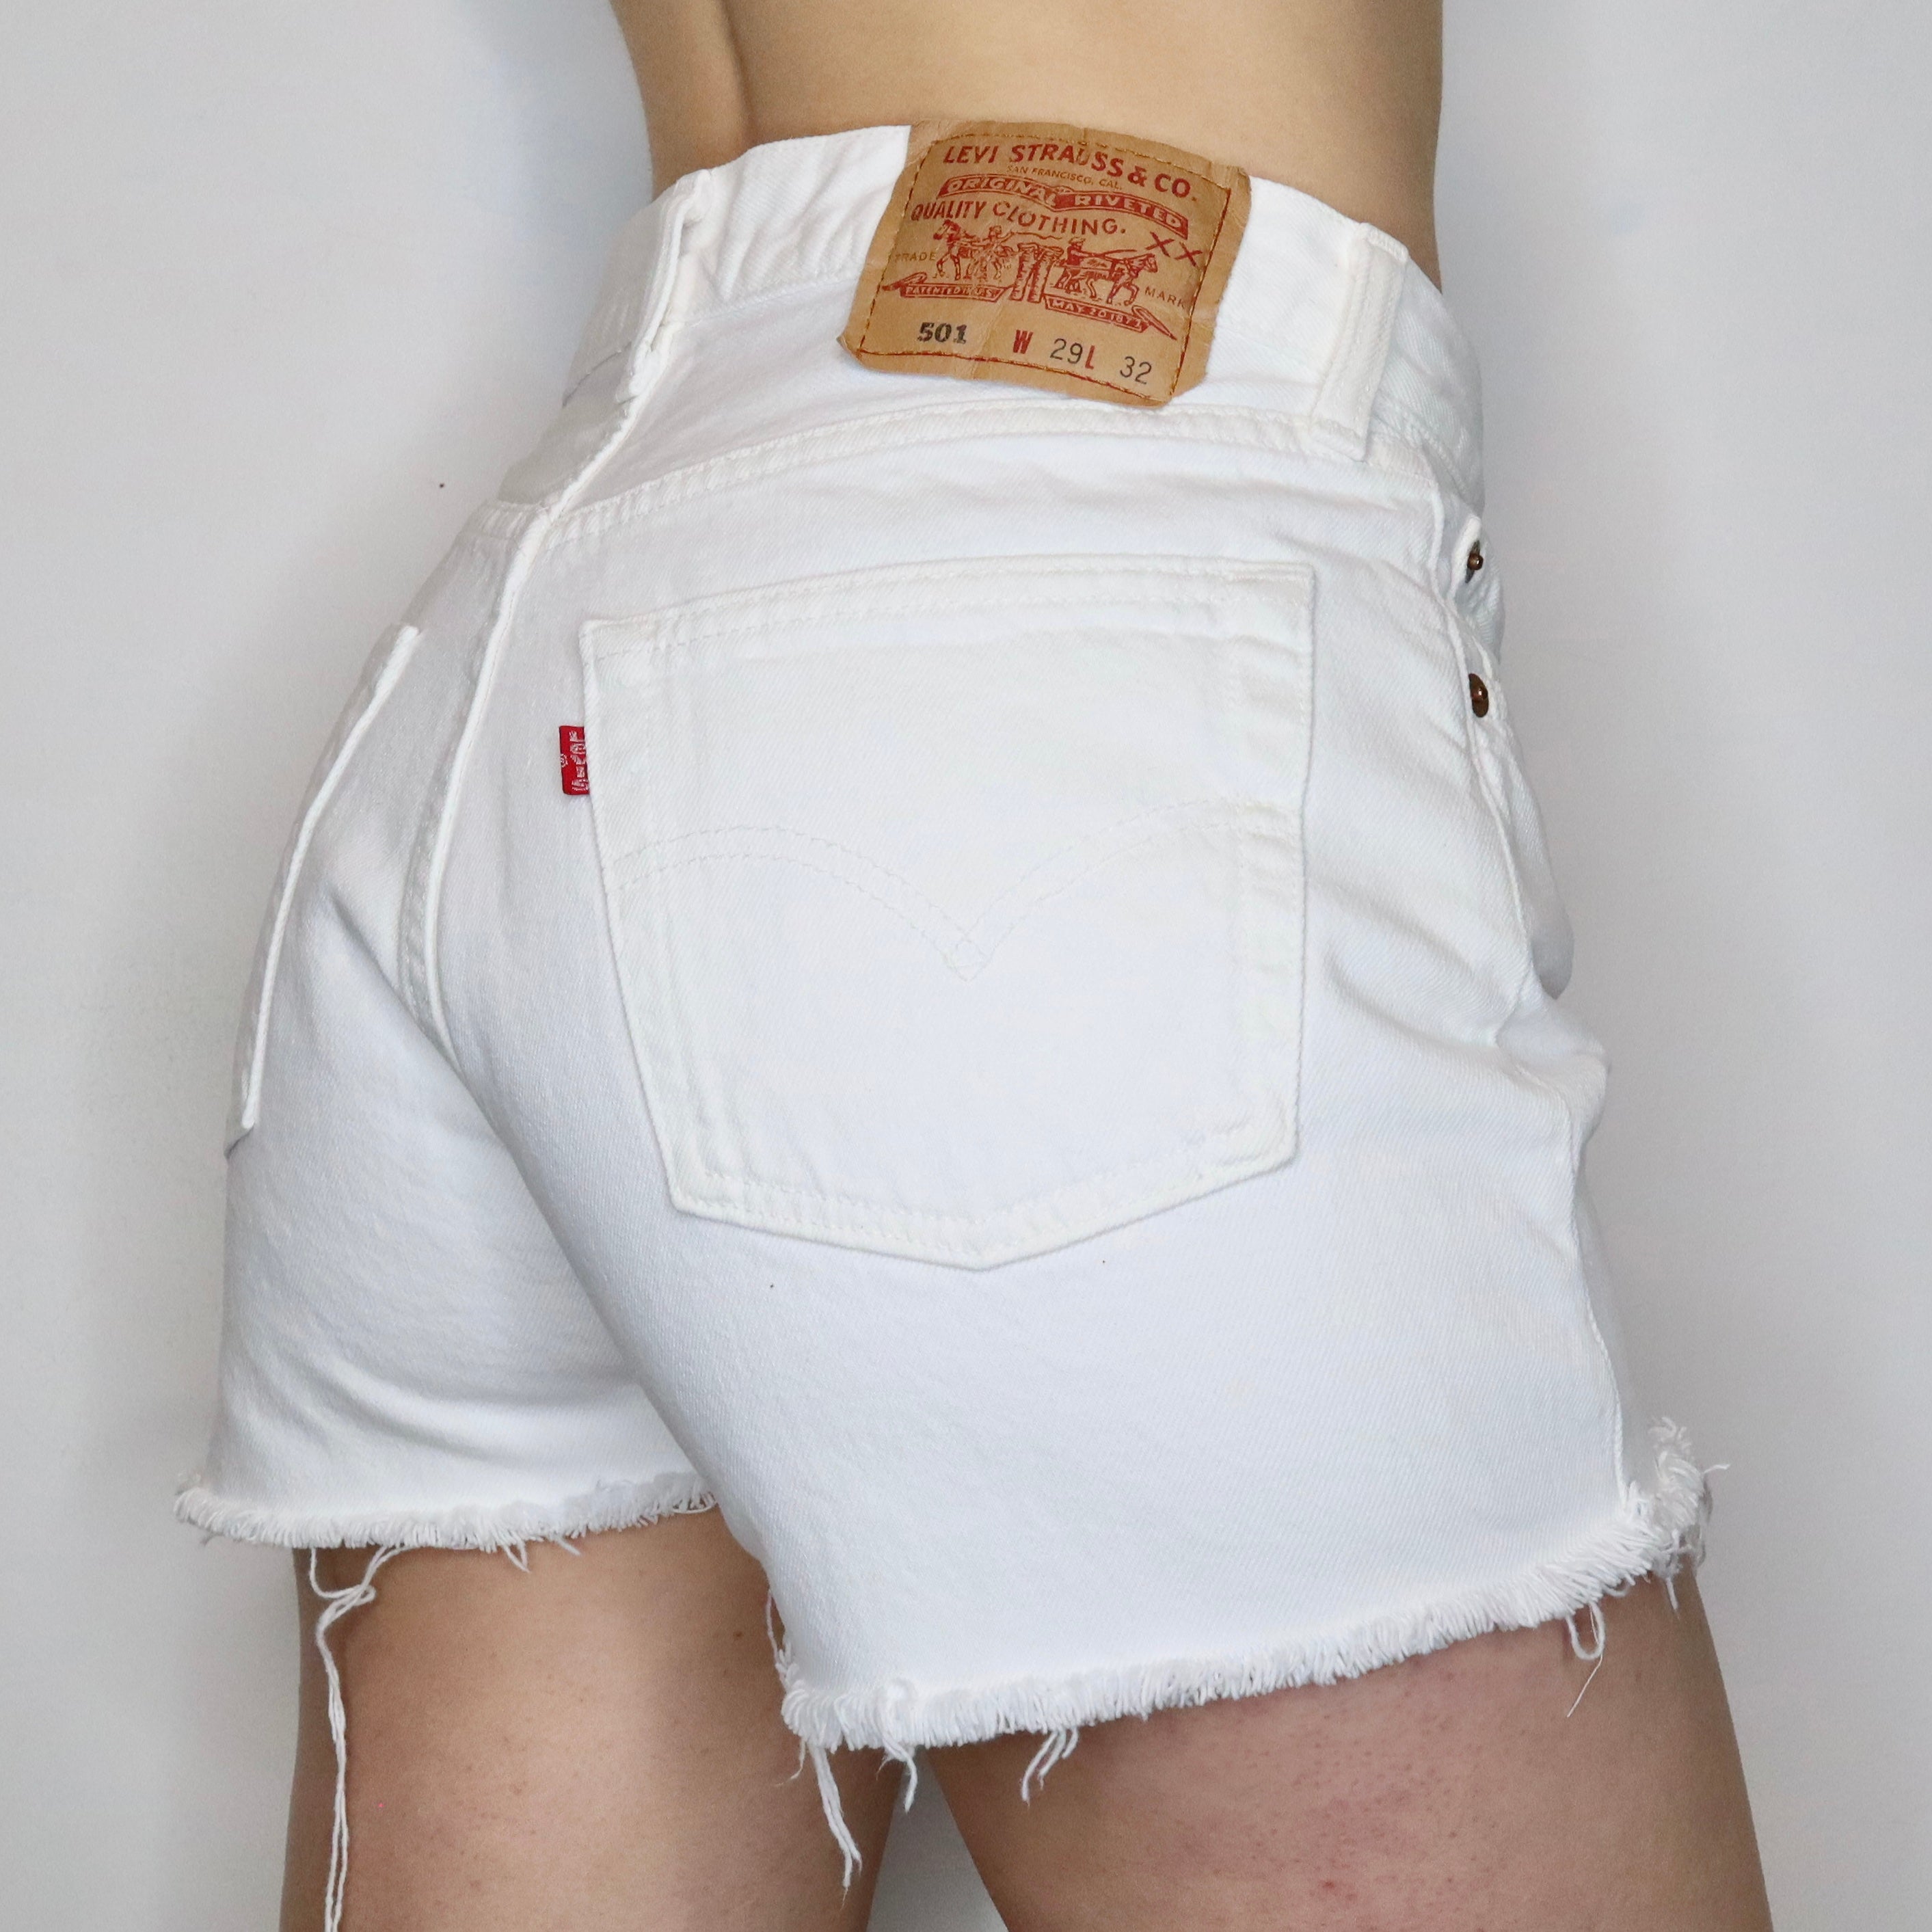 White Levi's 501 Shorts - Imber Vintage